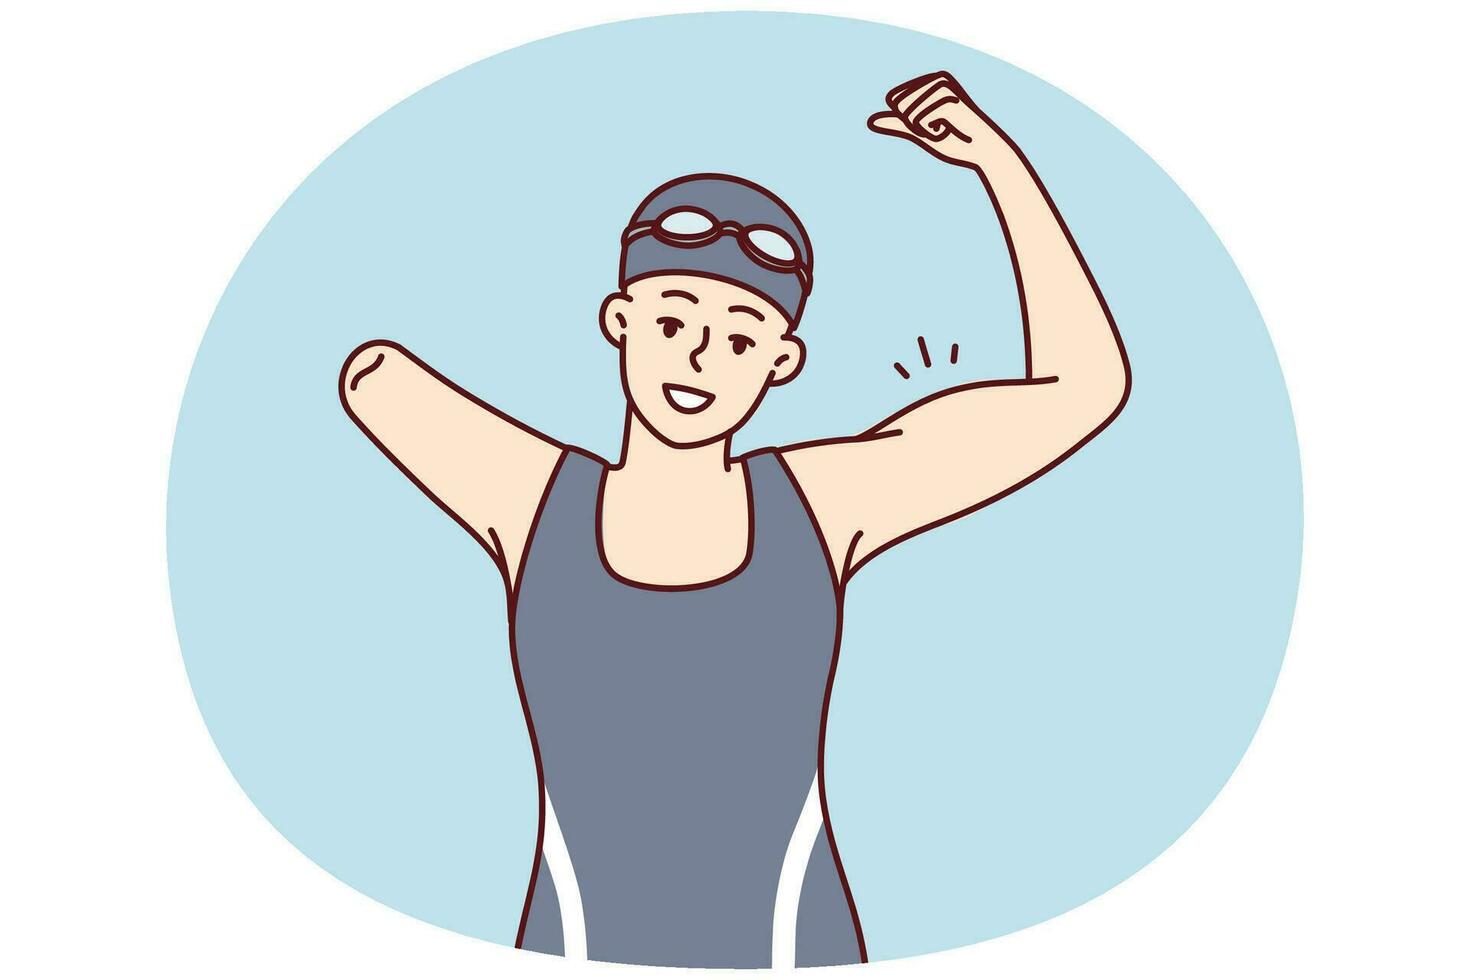 mulher nadador com 1 braço mostrando força de mostrando bíceps Como placa do vitória. vetor imagem